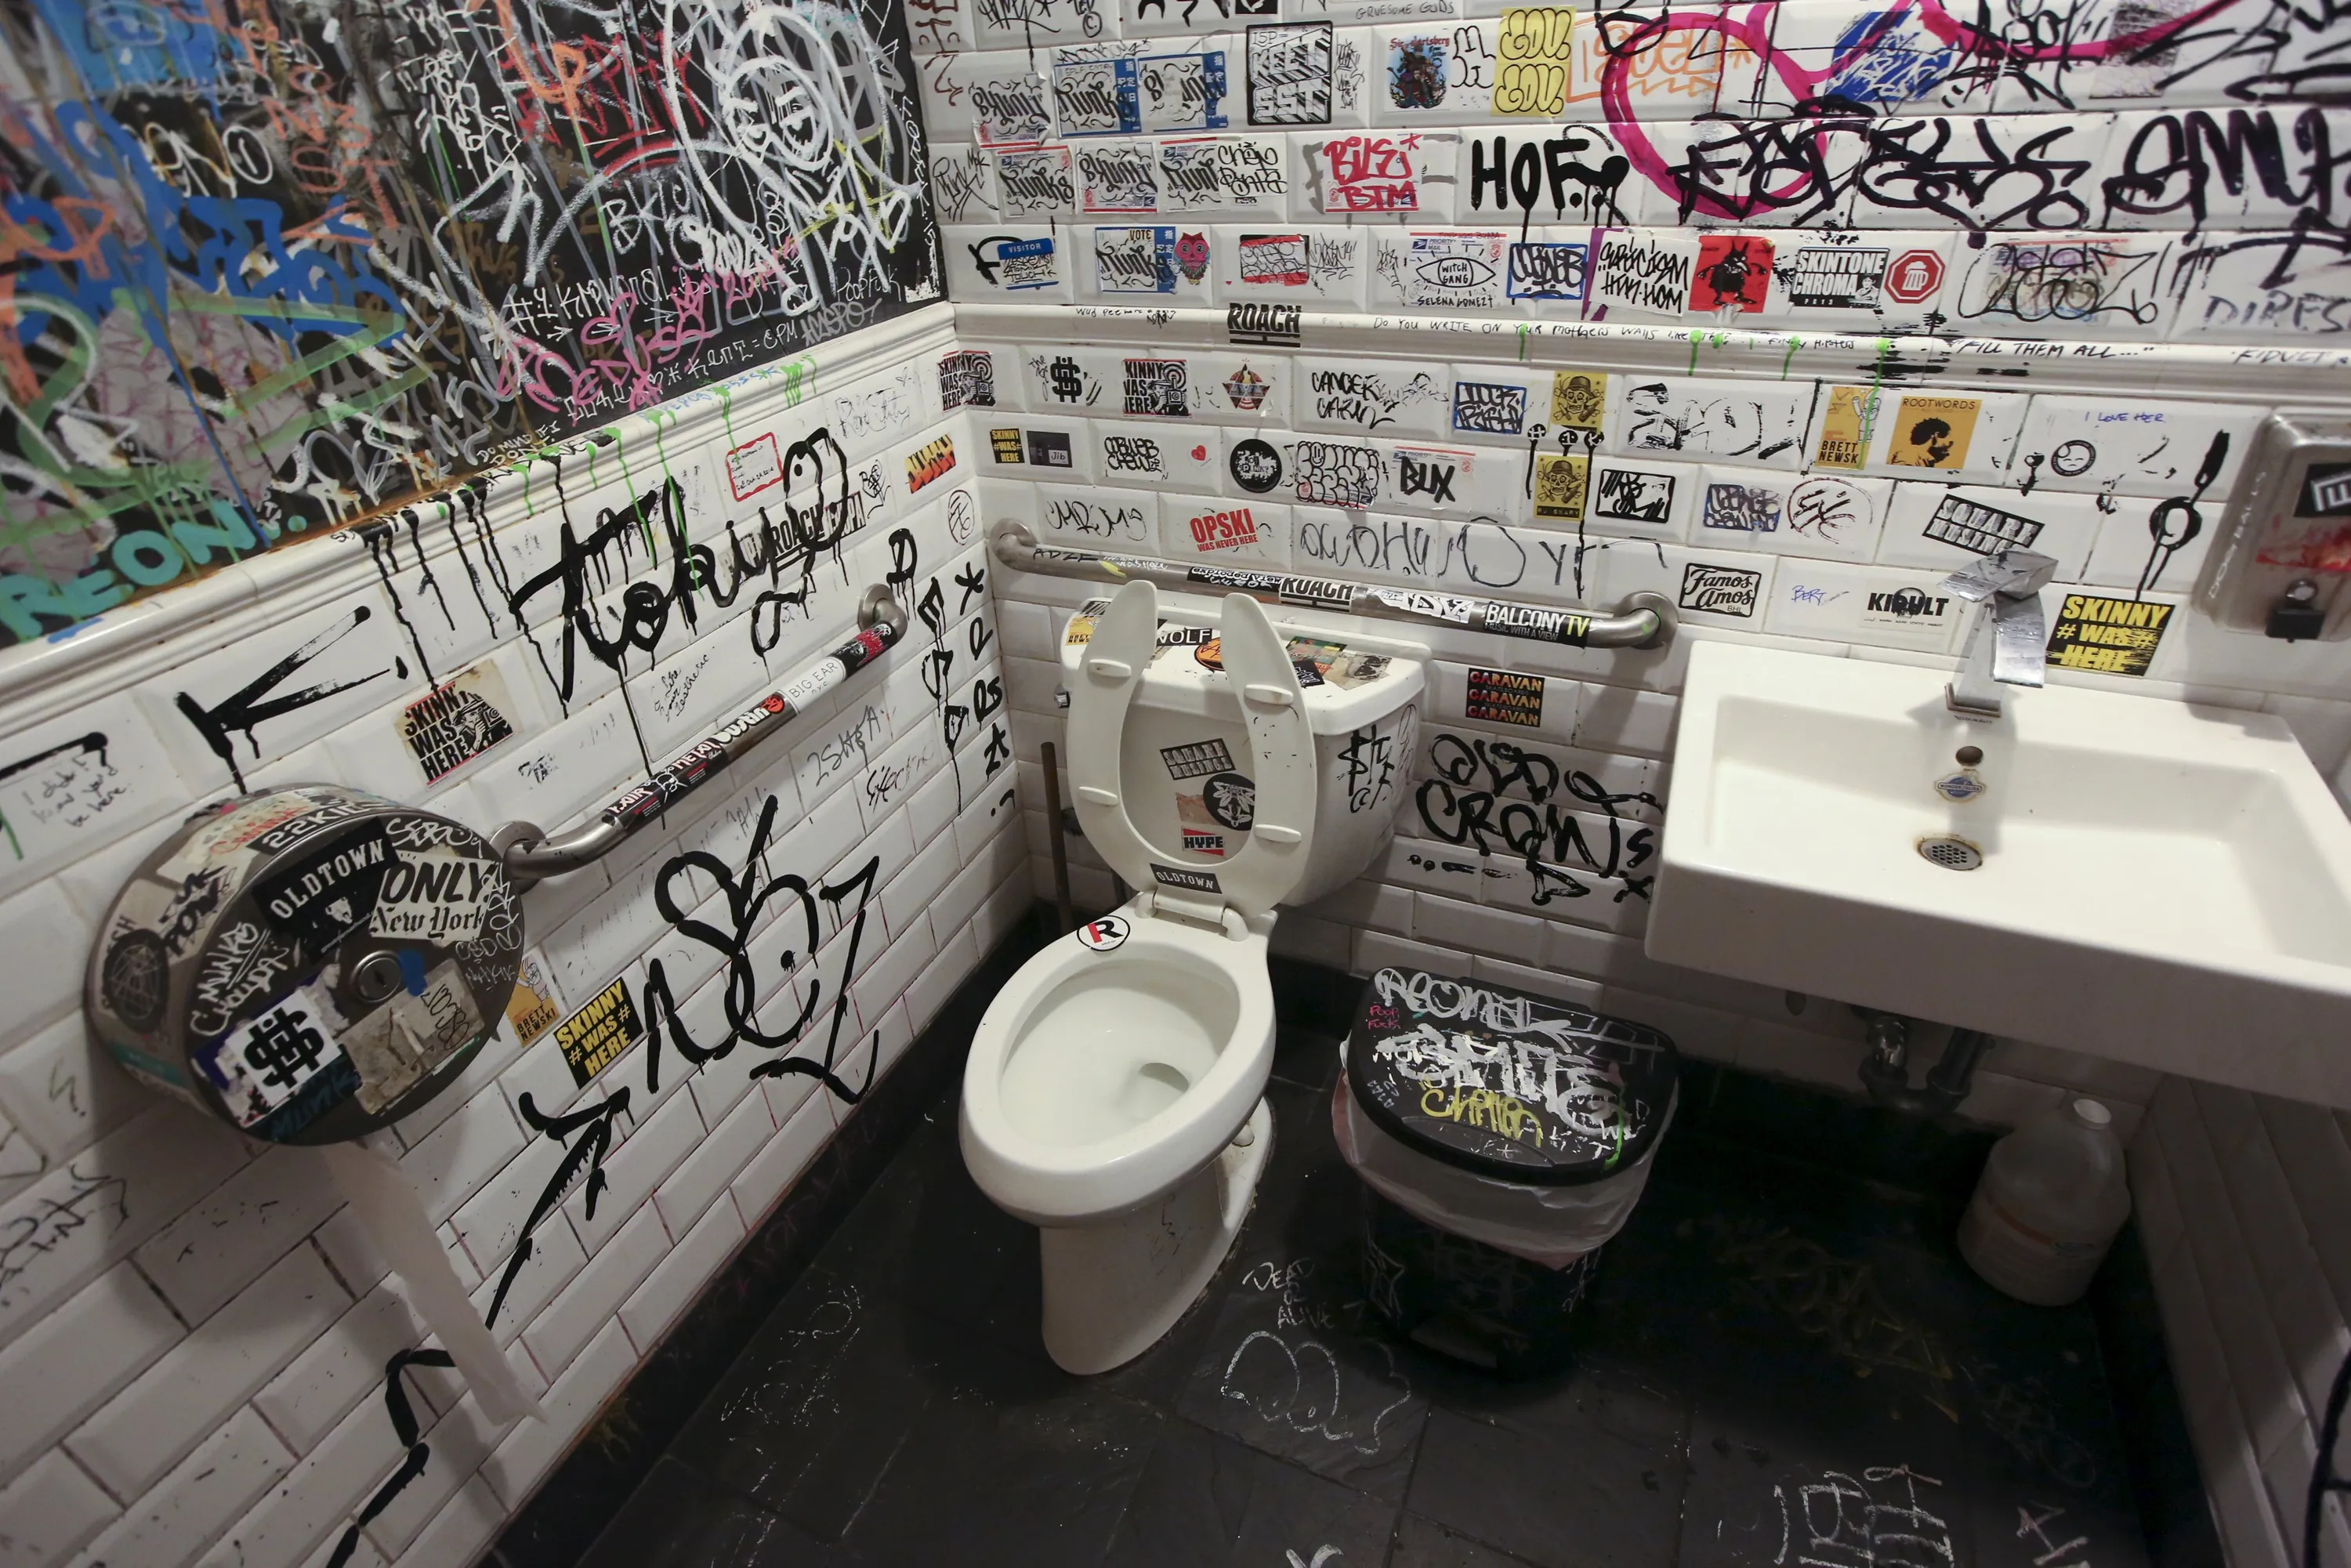 Ночной клуб туалет видео. Креативный унитаз. Надписи на стенах туалета. Общественный туалет в США. Общественные туалеты в Америке.